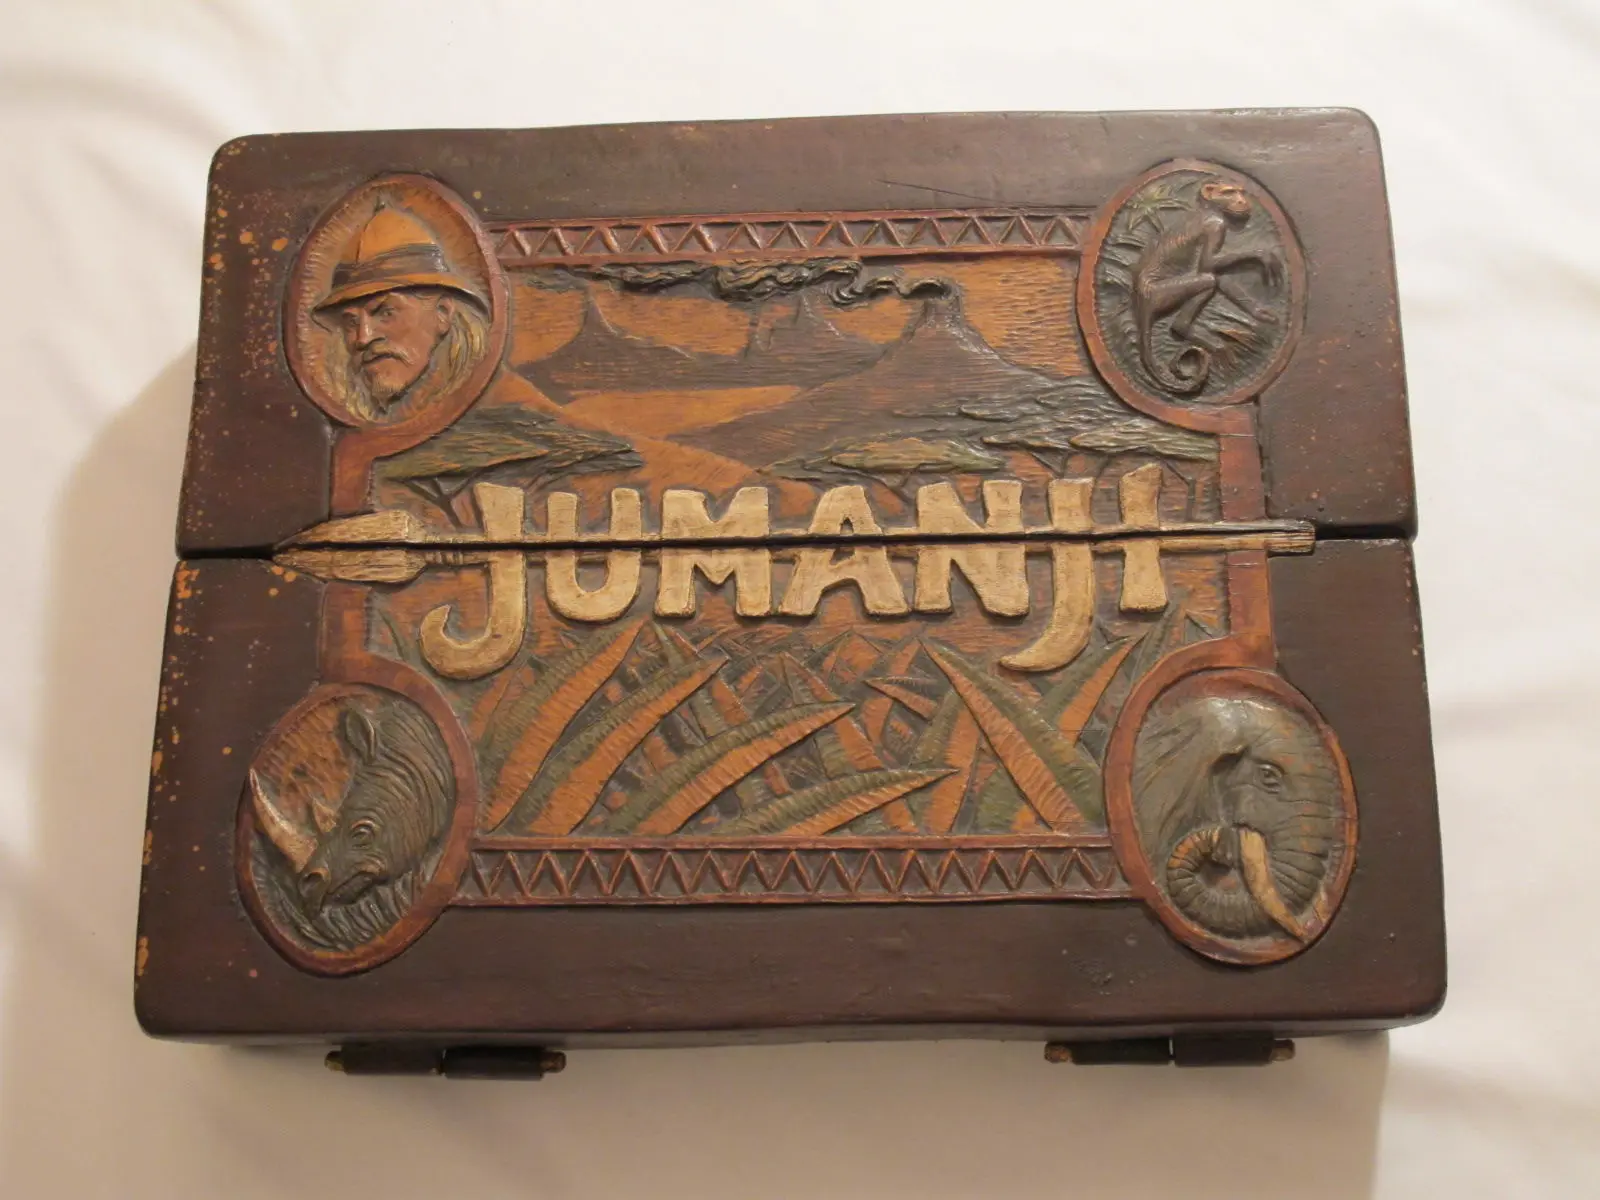 Un exemplaire du jeu Jumanji utilisé dans le film mis en vente